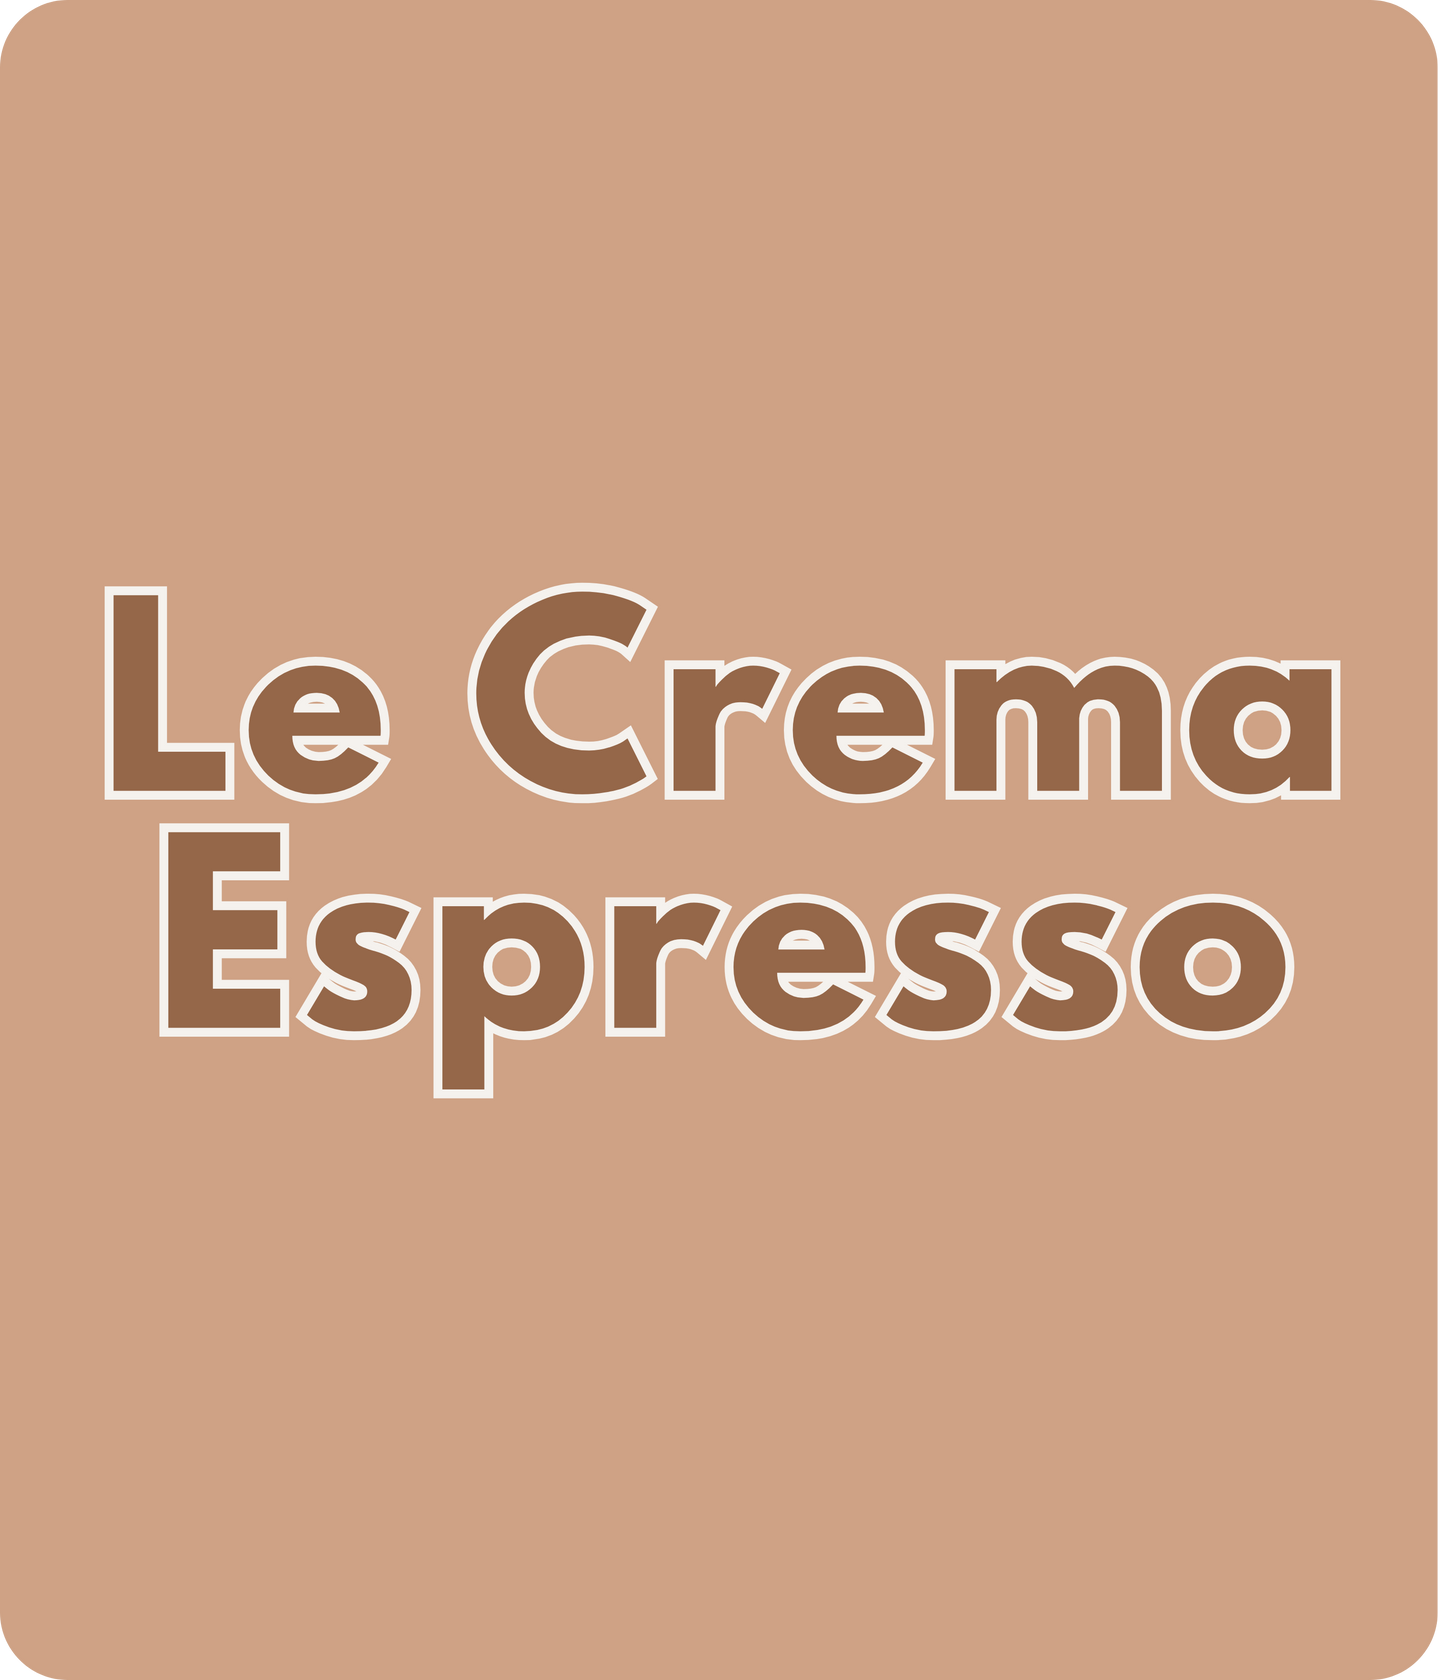 Le Crema Espresso